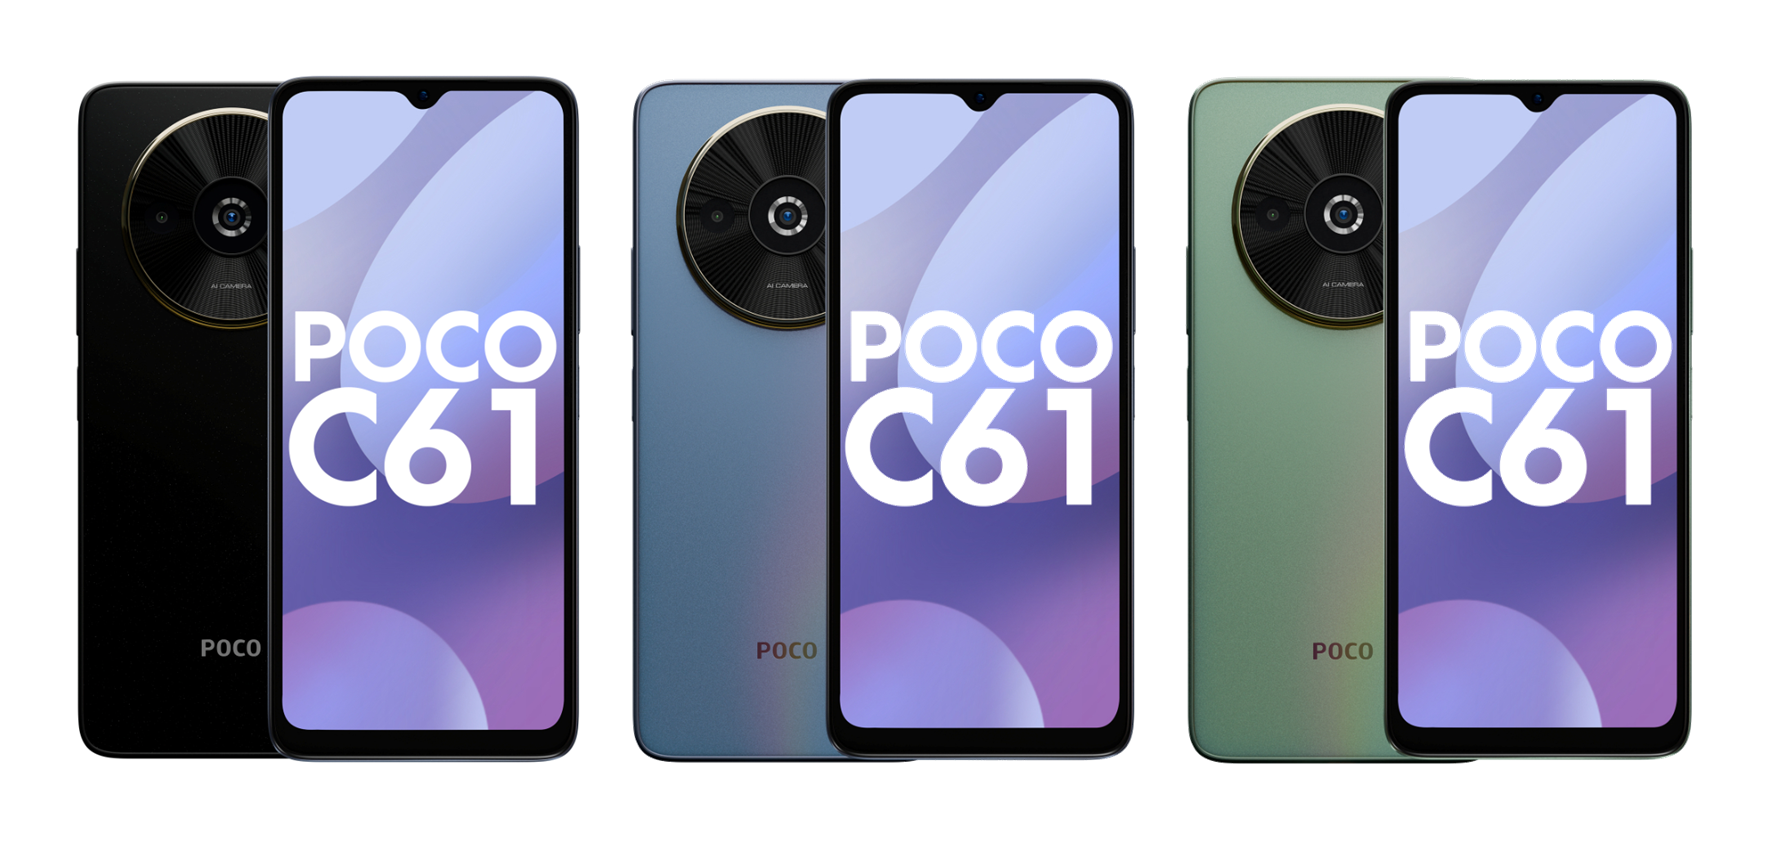 Wyświetlacz LCD 90 Hz, układ MediaTek Helio G36 i podwójny aparat: zdjęcia i szczegóły smartfona POCO C61 pojawiły się w Internecie